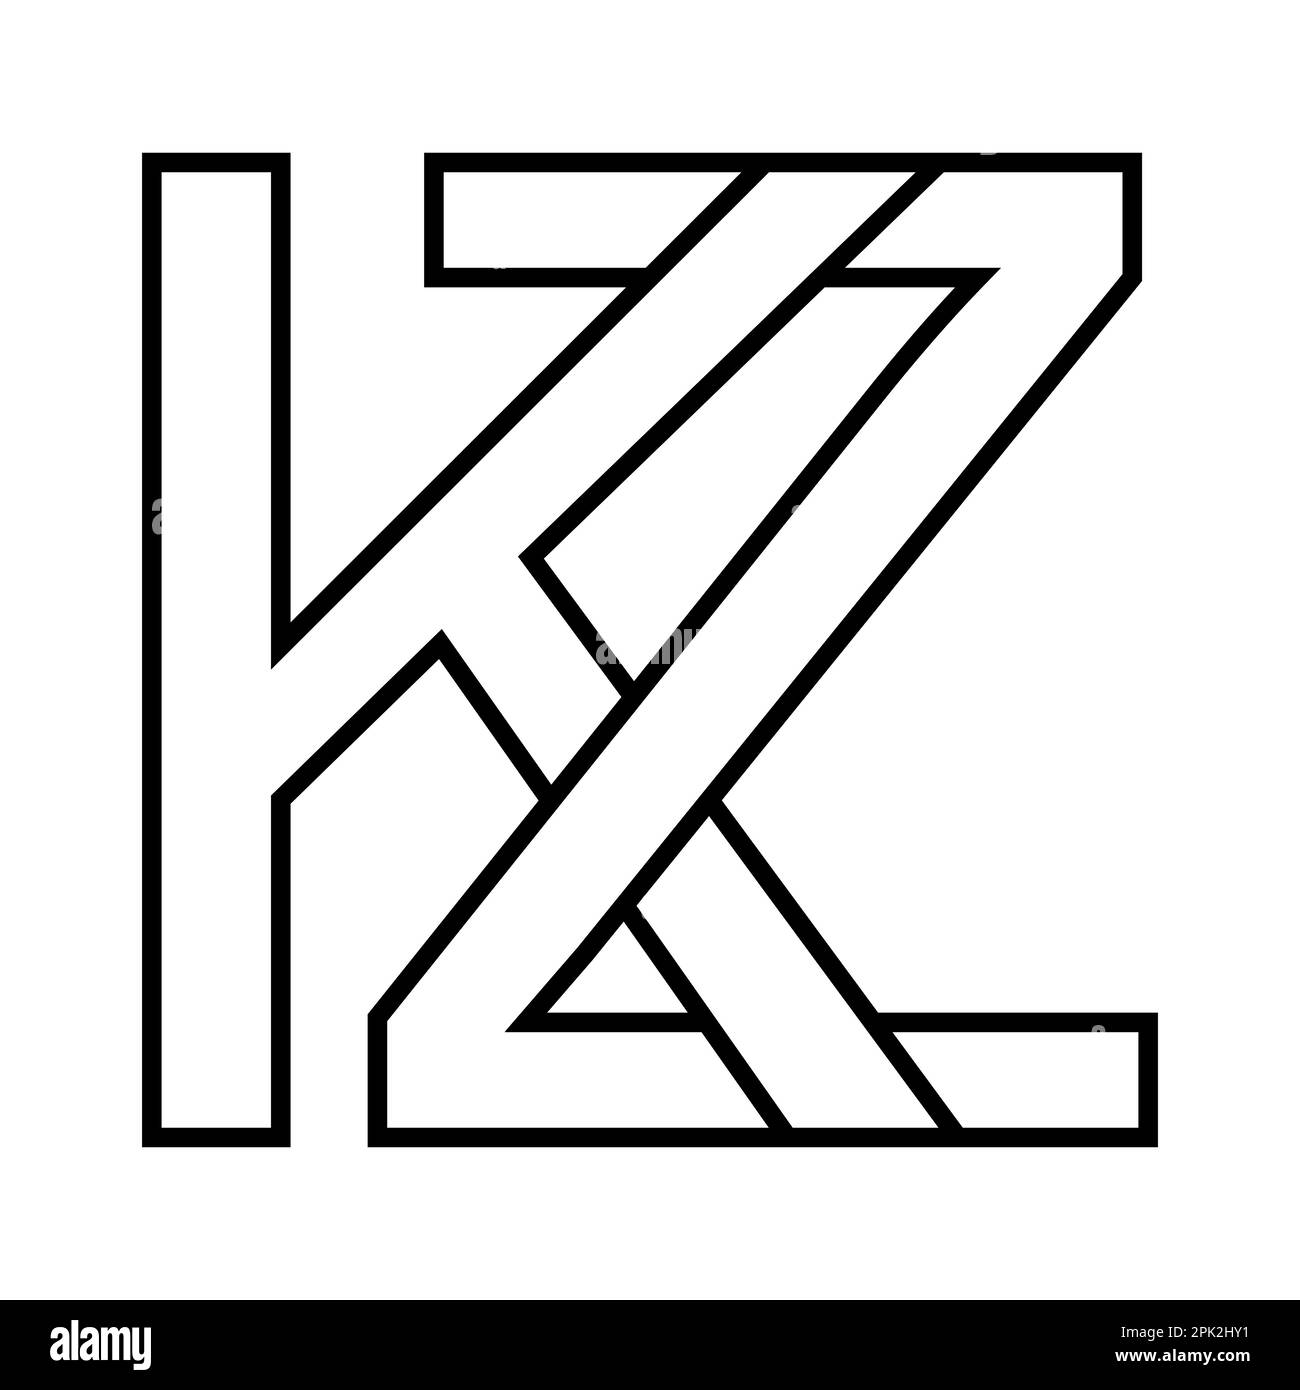 Logo Kazakhstan kz zk, icona lettere doppie logotipo z k Illustrazione Vettoriale